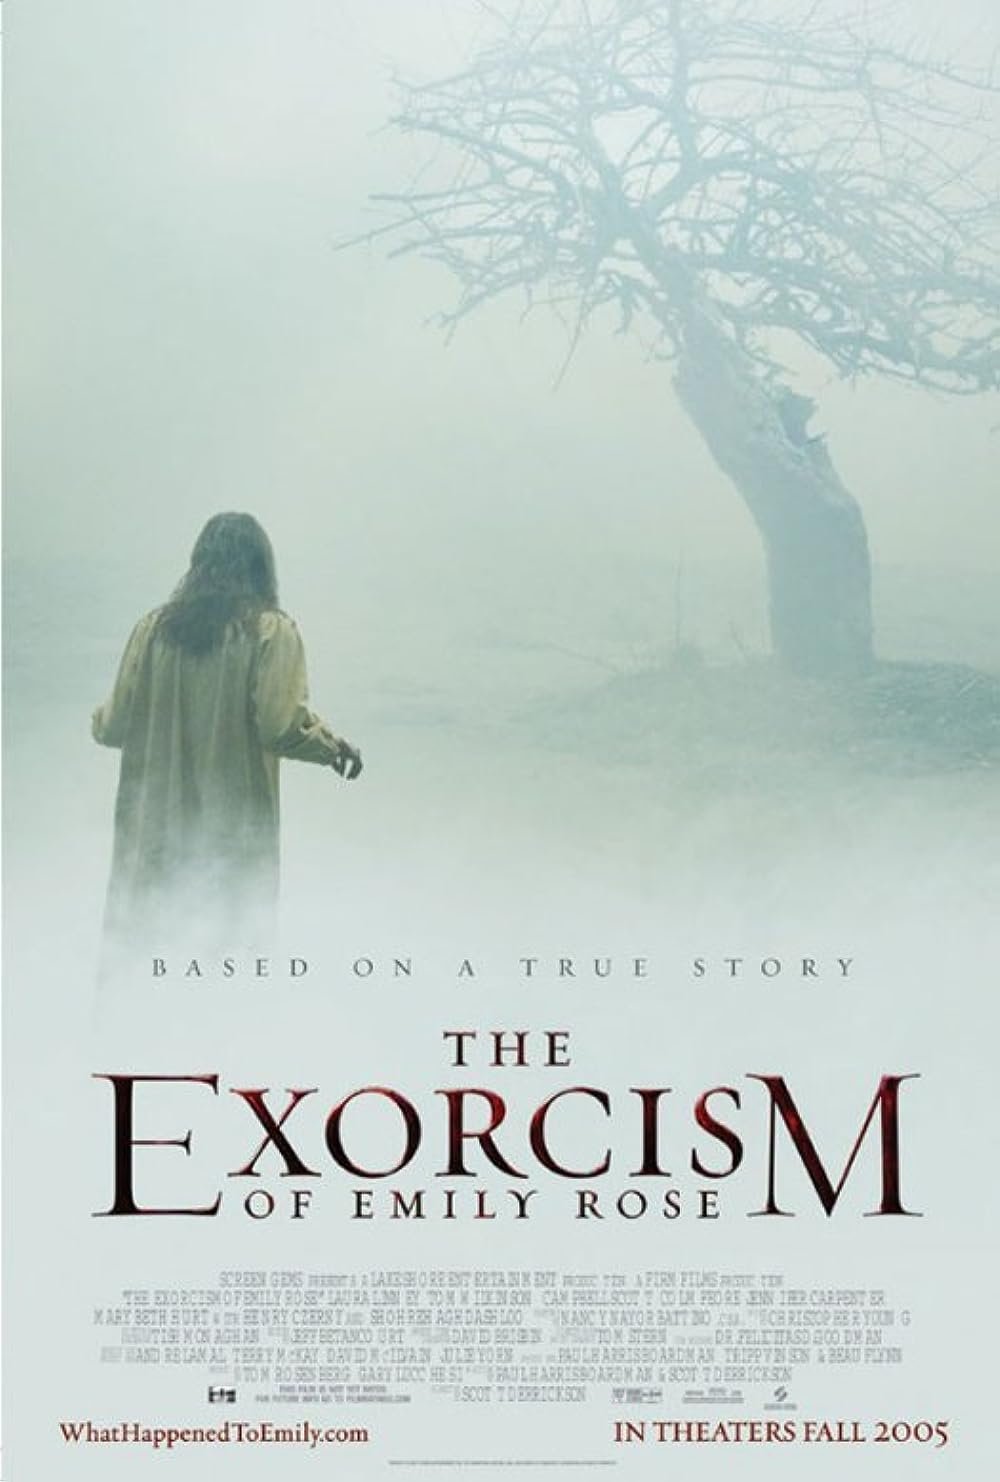 ეშმაკის განდევნა ემილი როუზისგან/The Exorcism of Emily Rose